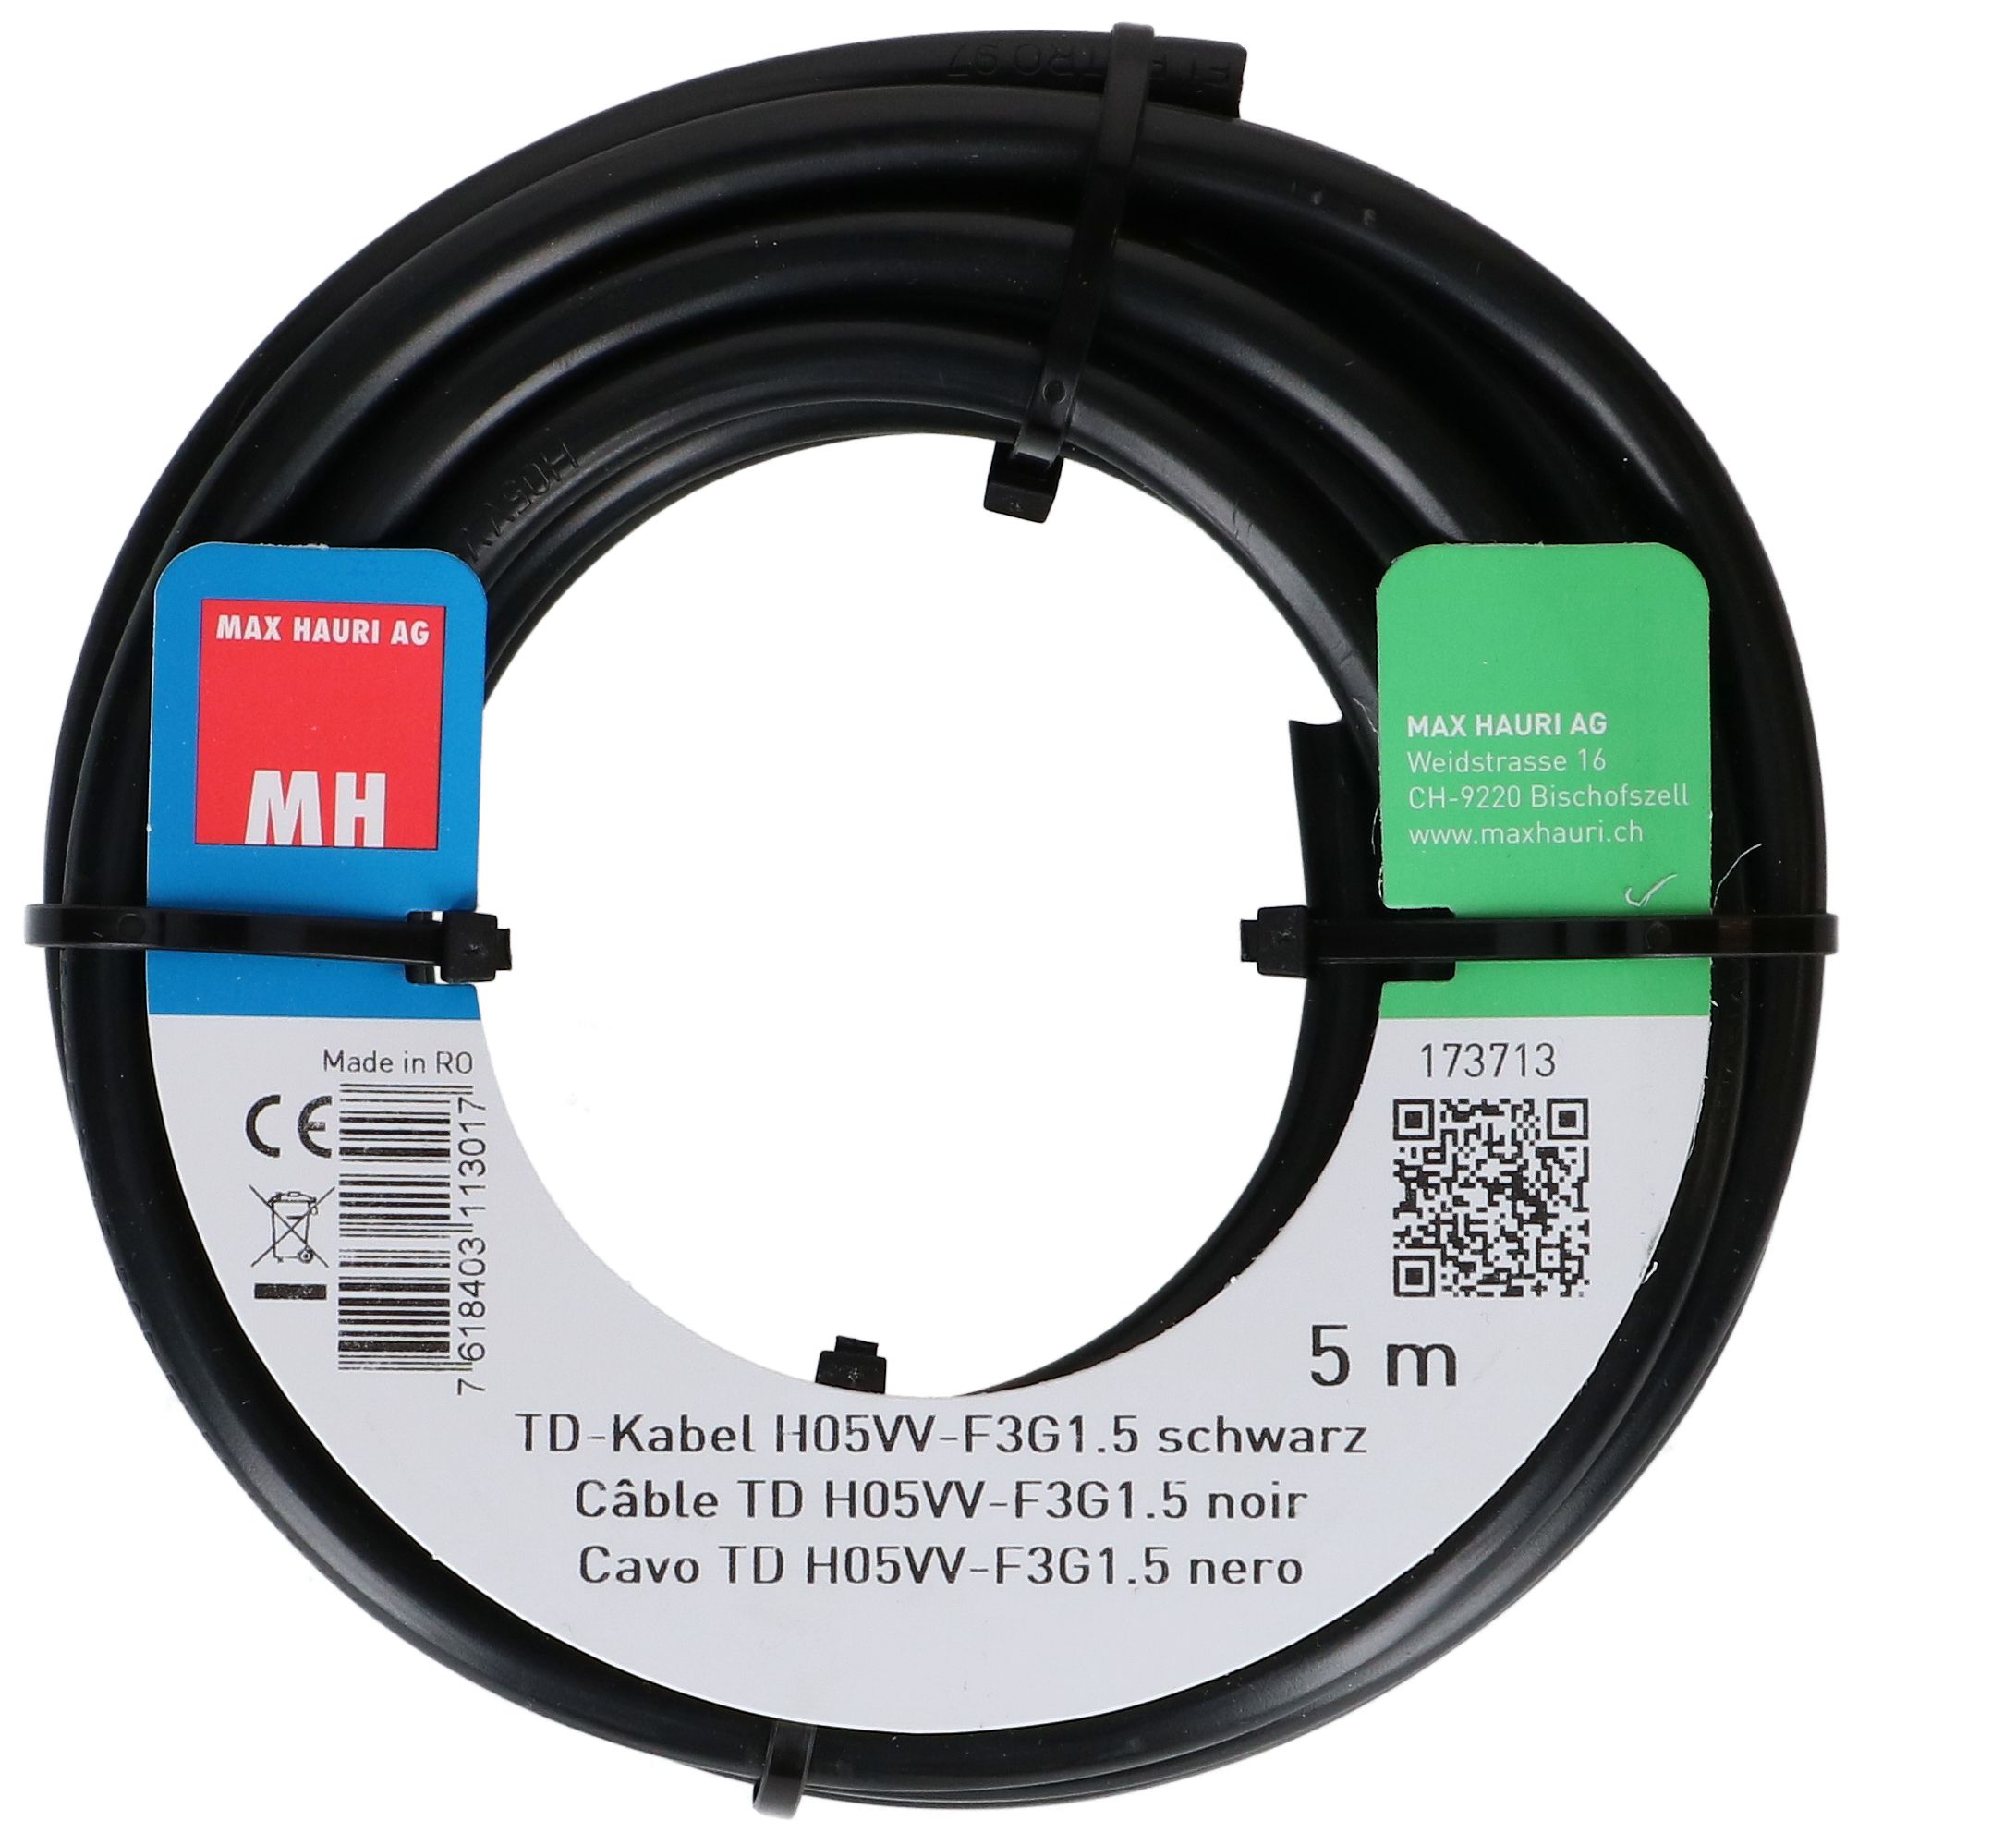 TD-Kabel H05VV-F3G1.5 5m schwarz